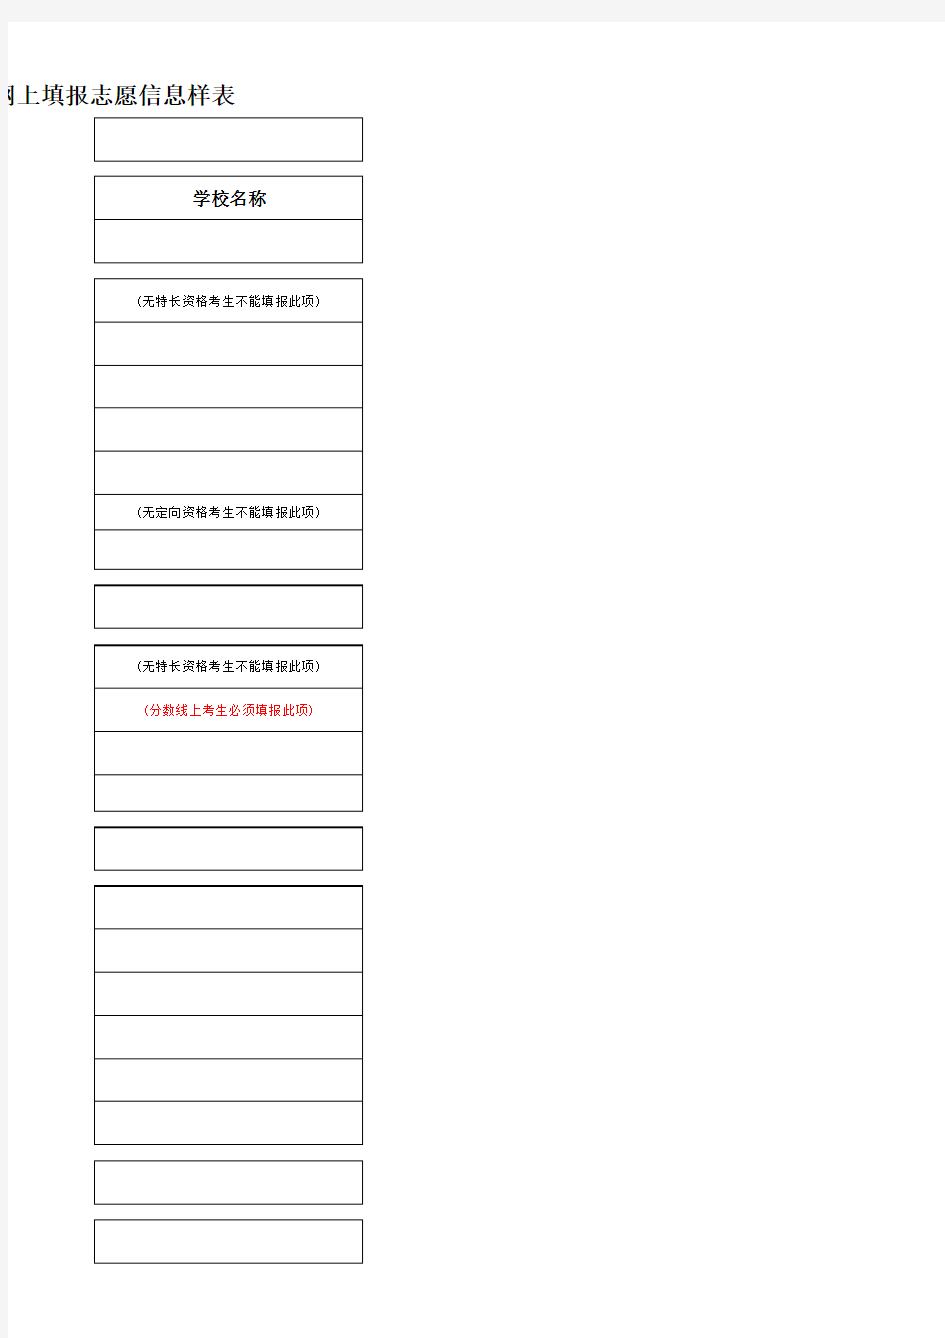 西安市2012年中考城六区考生网上填报志愿信息样表